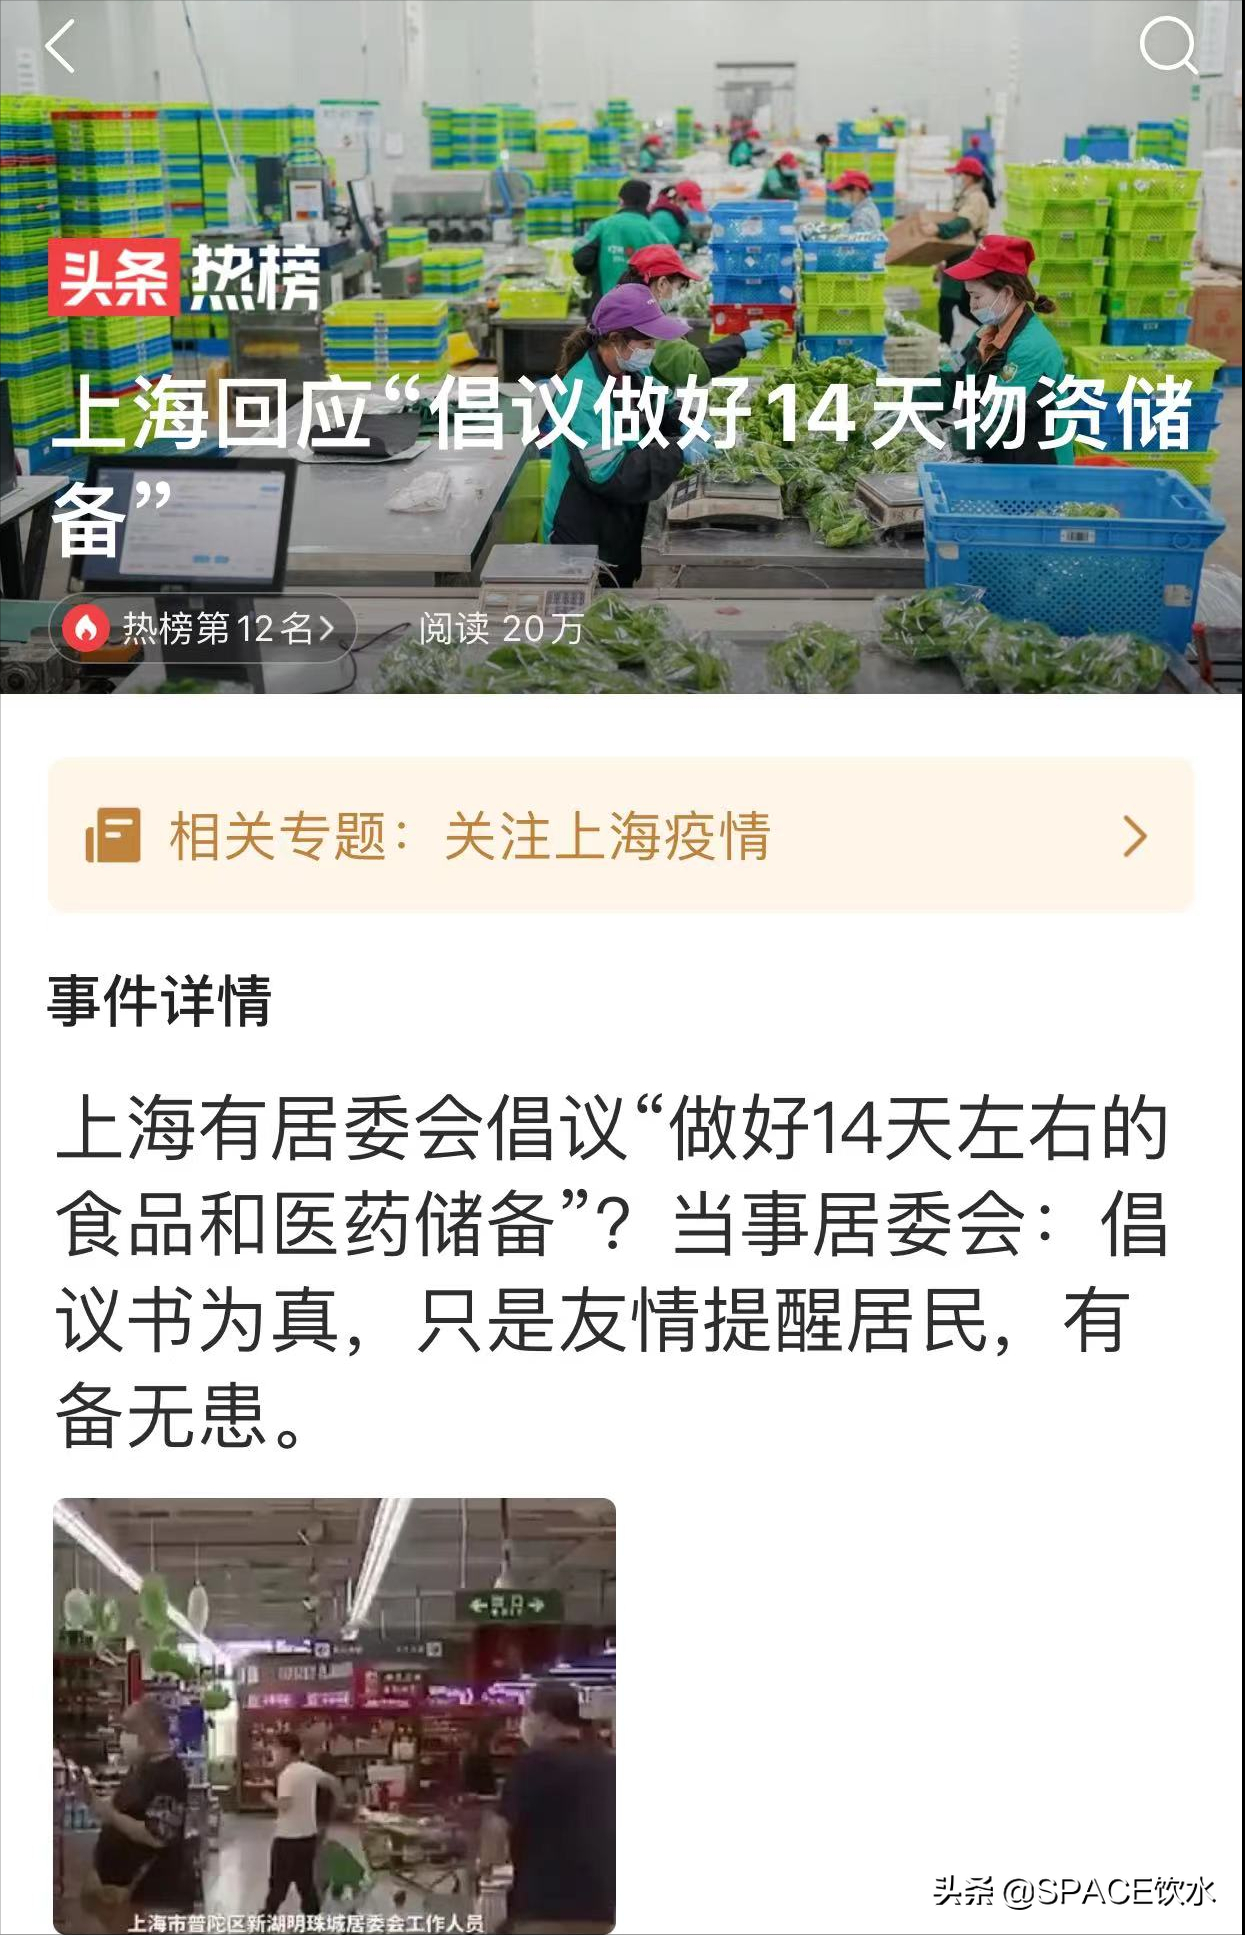 上海两居委回应14天物资储备，到底是善意提醒，还是另类恐慌？